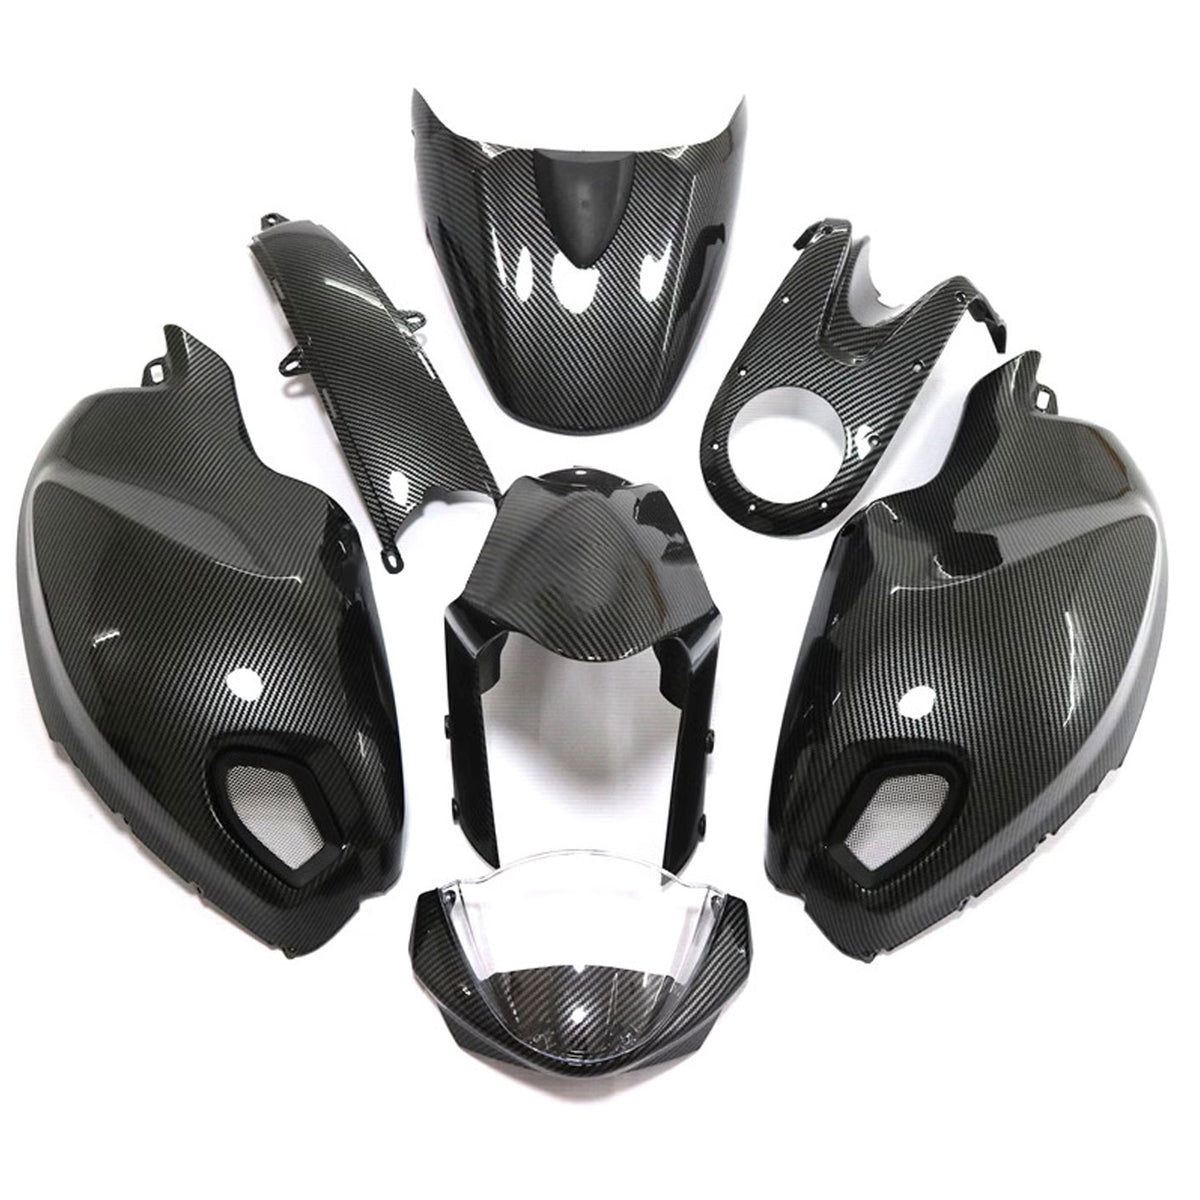 Amotopart Verkleidungssatz für alle Baujahre Ducati Monster 696 796 1100 S EVO aus Karbonfaser in Schwarz